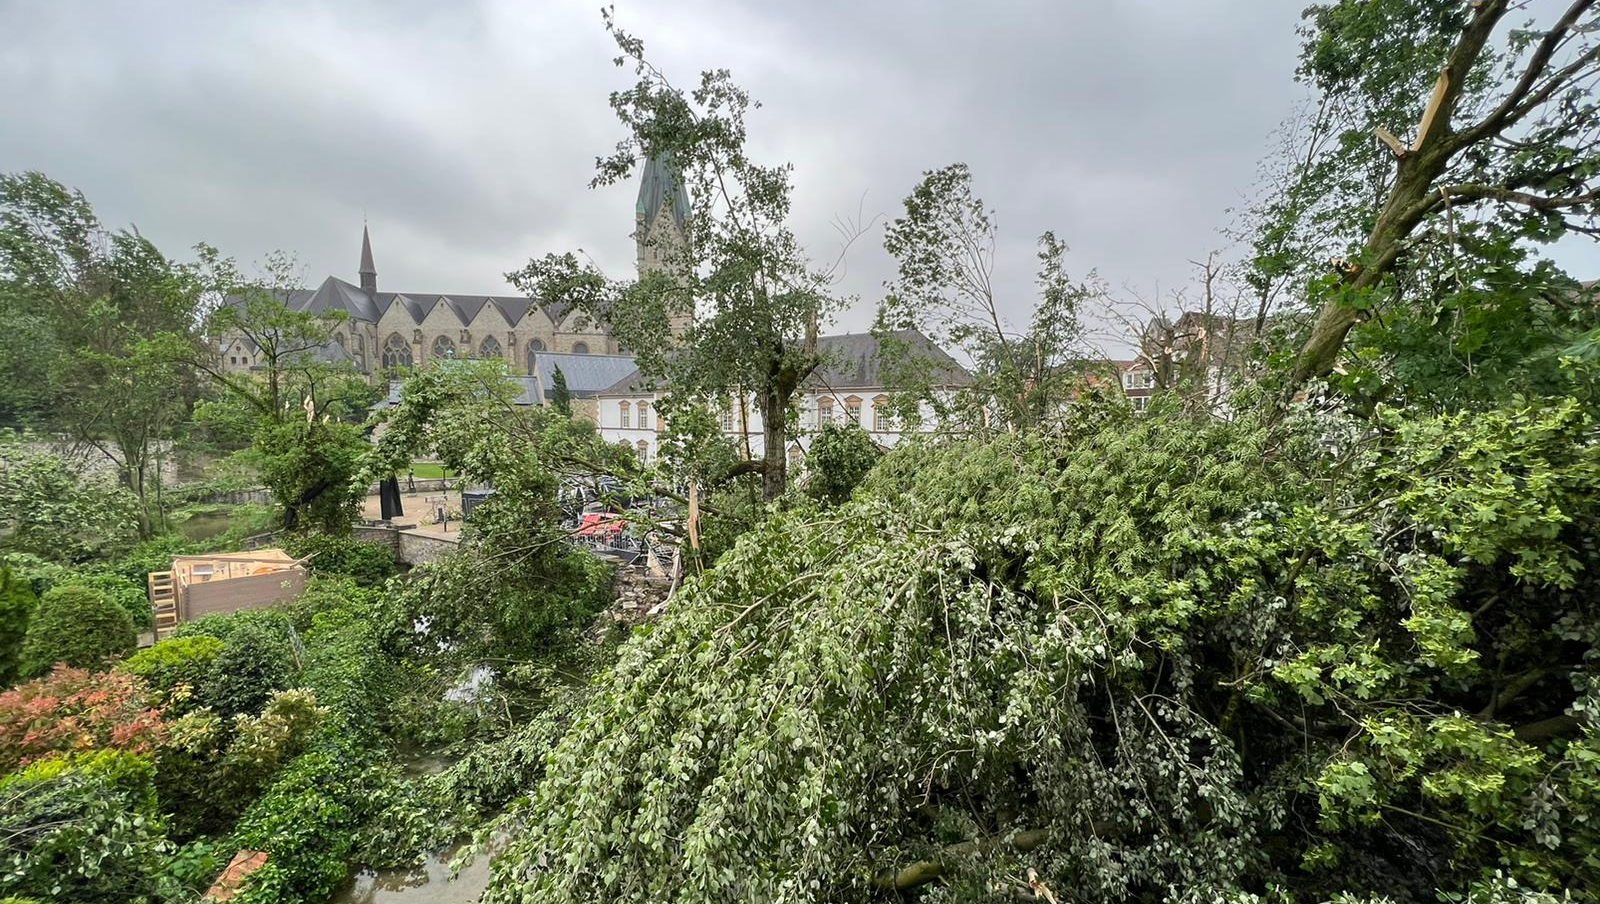 Schaden durch Sturm in Paderborn